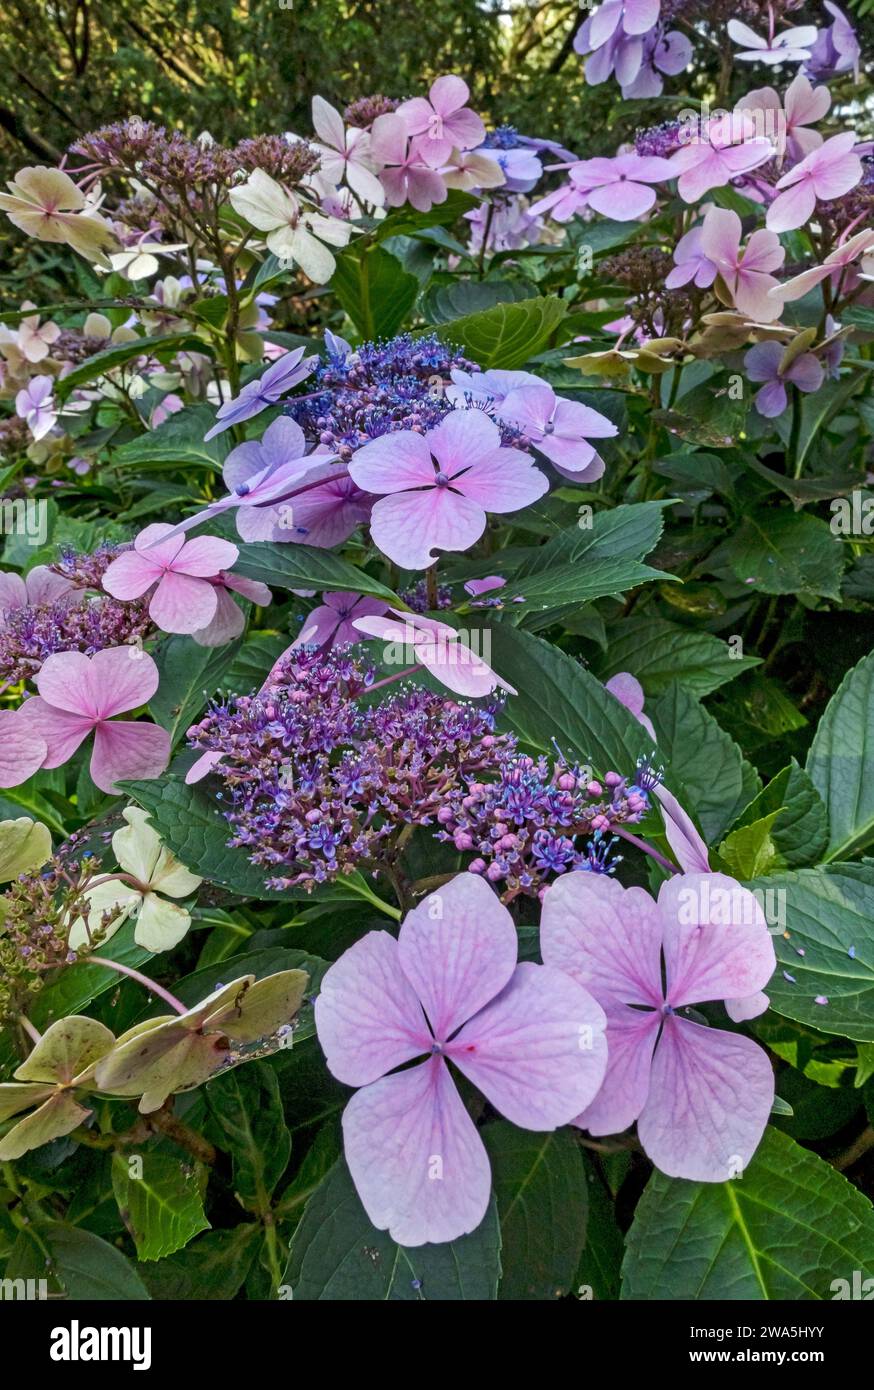 Nahaufnahme der rosa und blauen Lacecap Hortensie Makrophylla Blume blühende Blüten in der Blüte im Sommer England Großbritannien Großbritannien Großbritannien Großbritannien Großbritannien Großbritannien Großbritannien Großbritannien Großbritannien Großbritannien Großbritannien Großbritannien Großbritannien Großbritannien Großbritannien Großbritannien Großbritannien Stockfoto